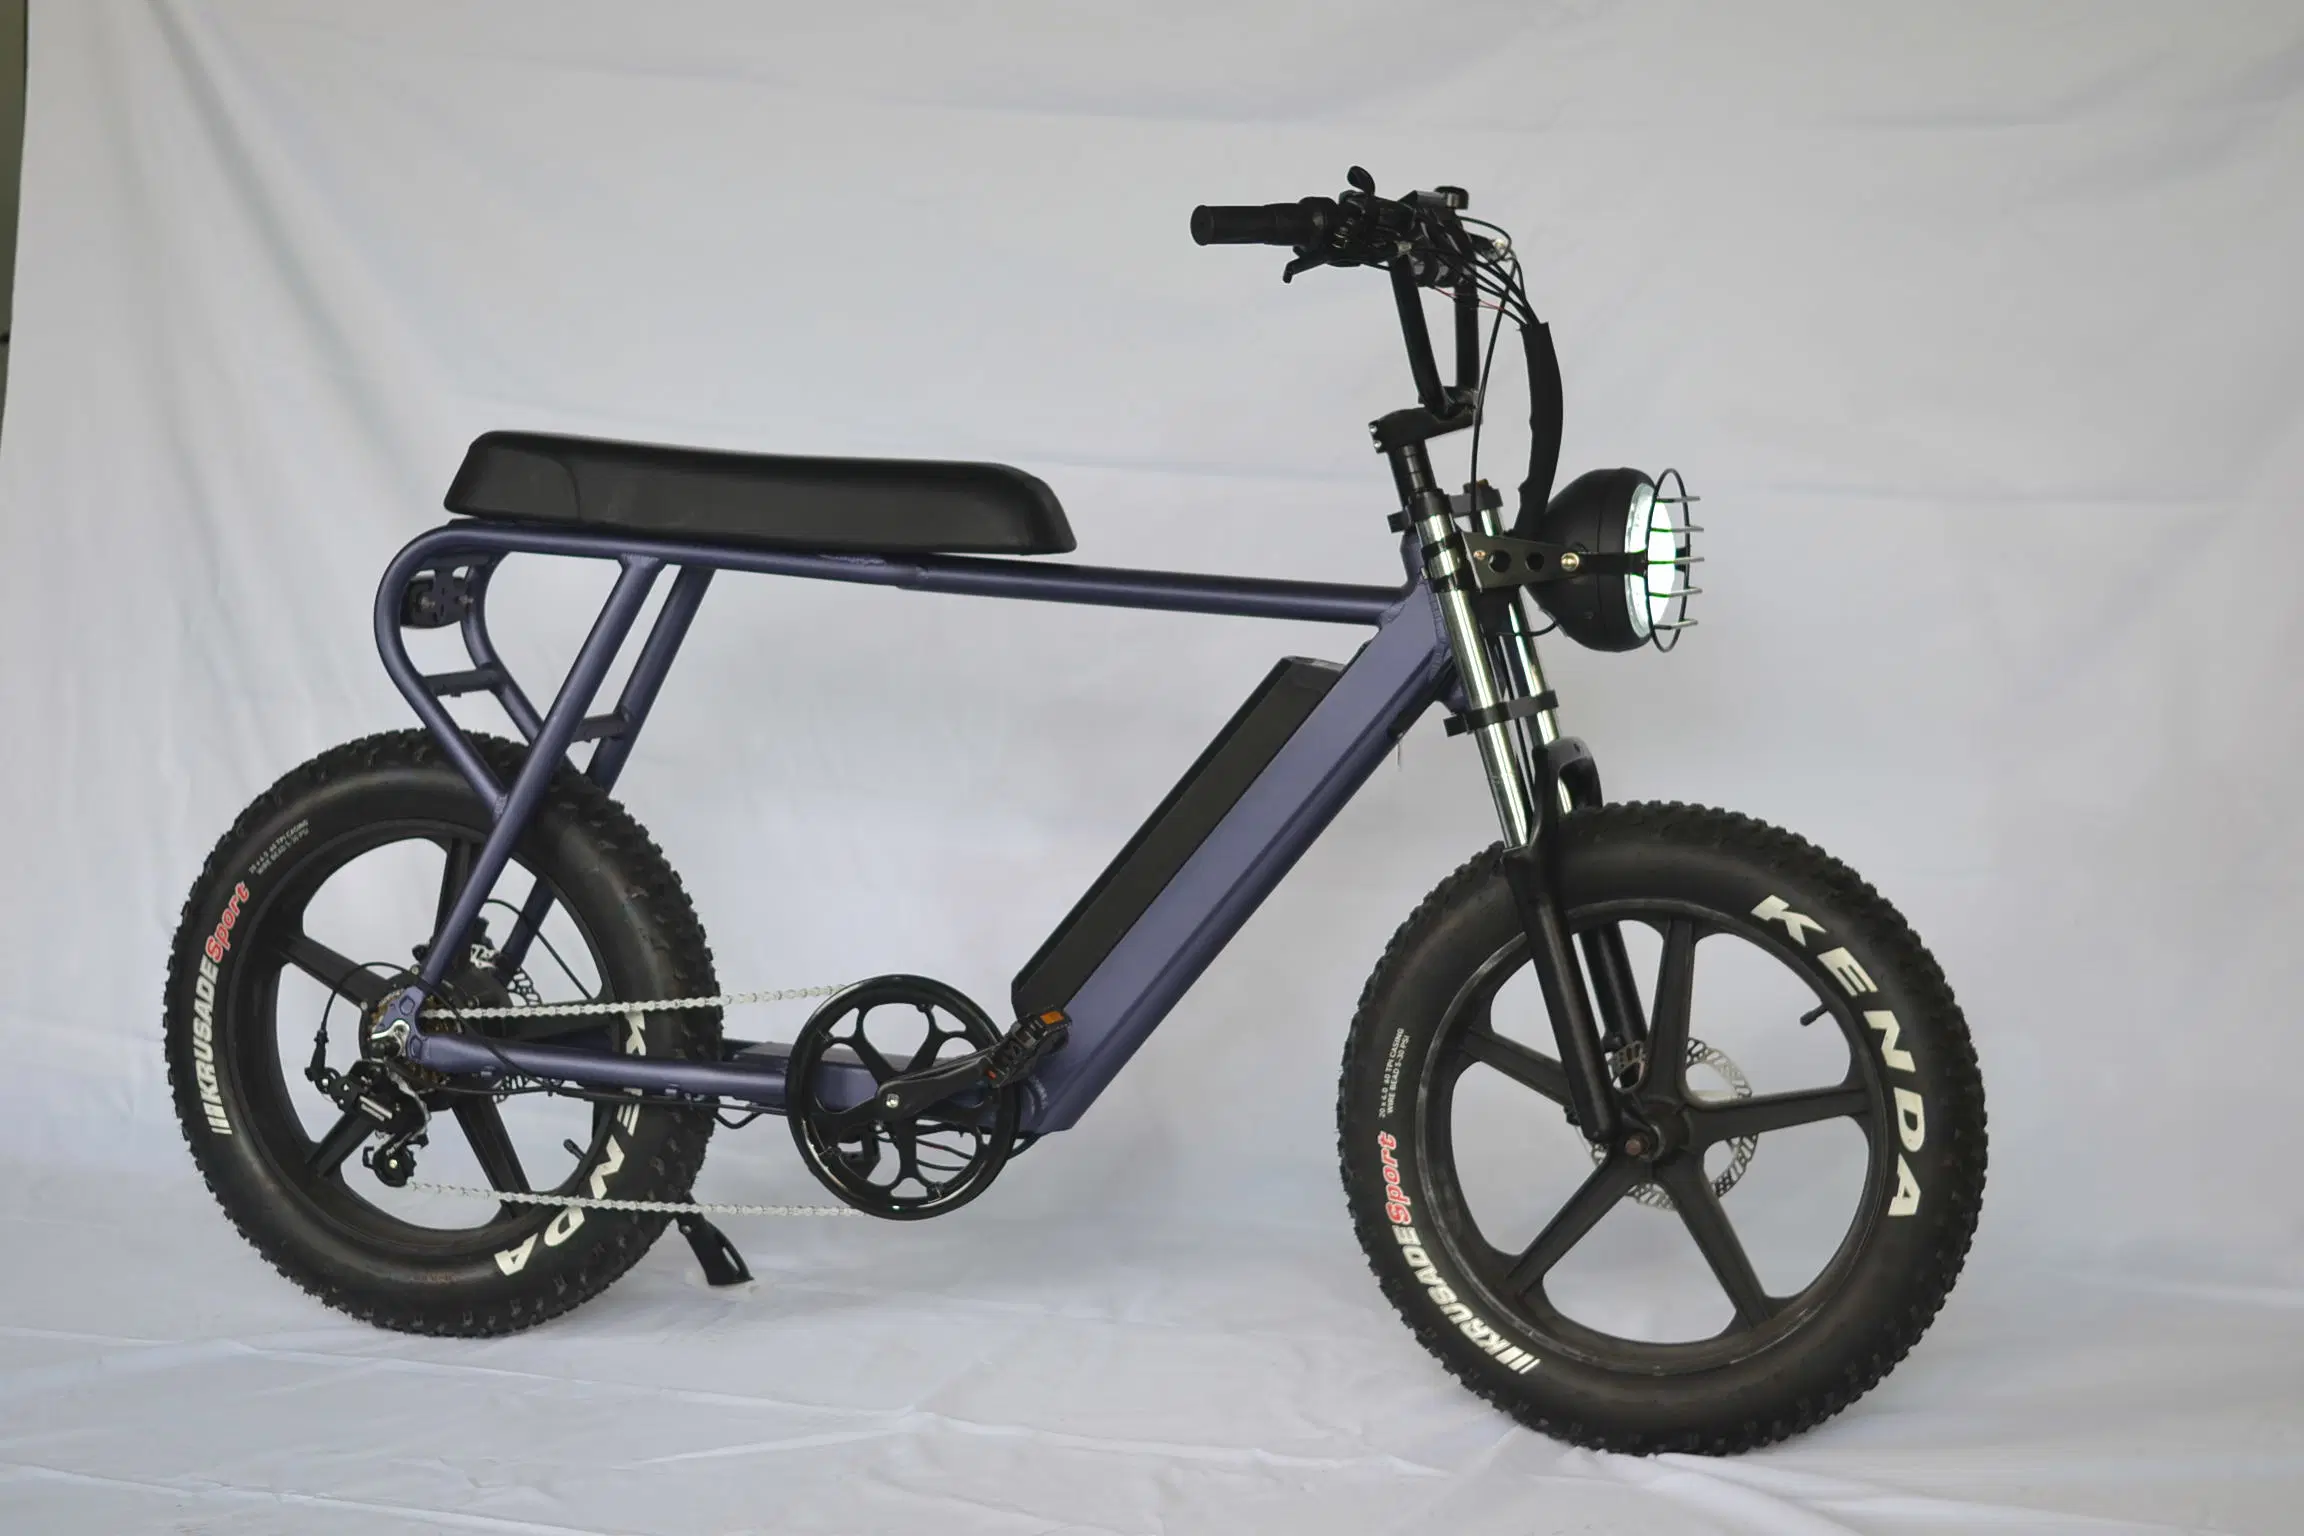 2021 Nuevo barato 500W 20pulgadas neumático Fat Fast E Bicicleta de Montaña Dirt Bike eléctrica